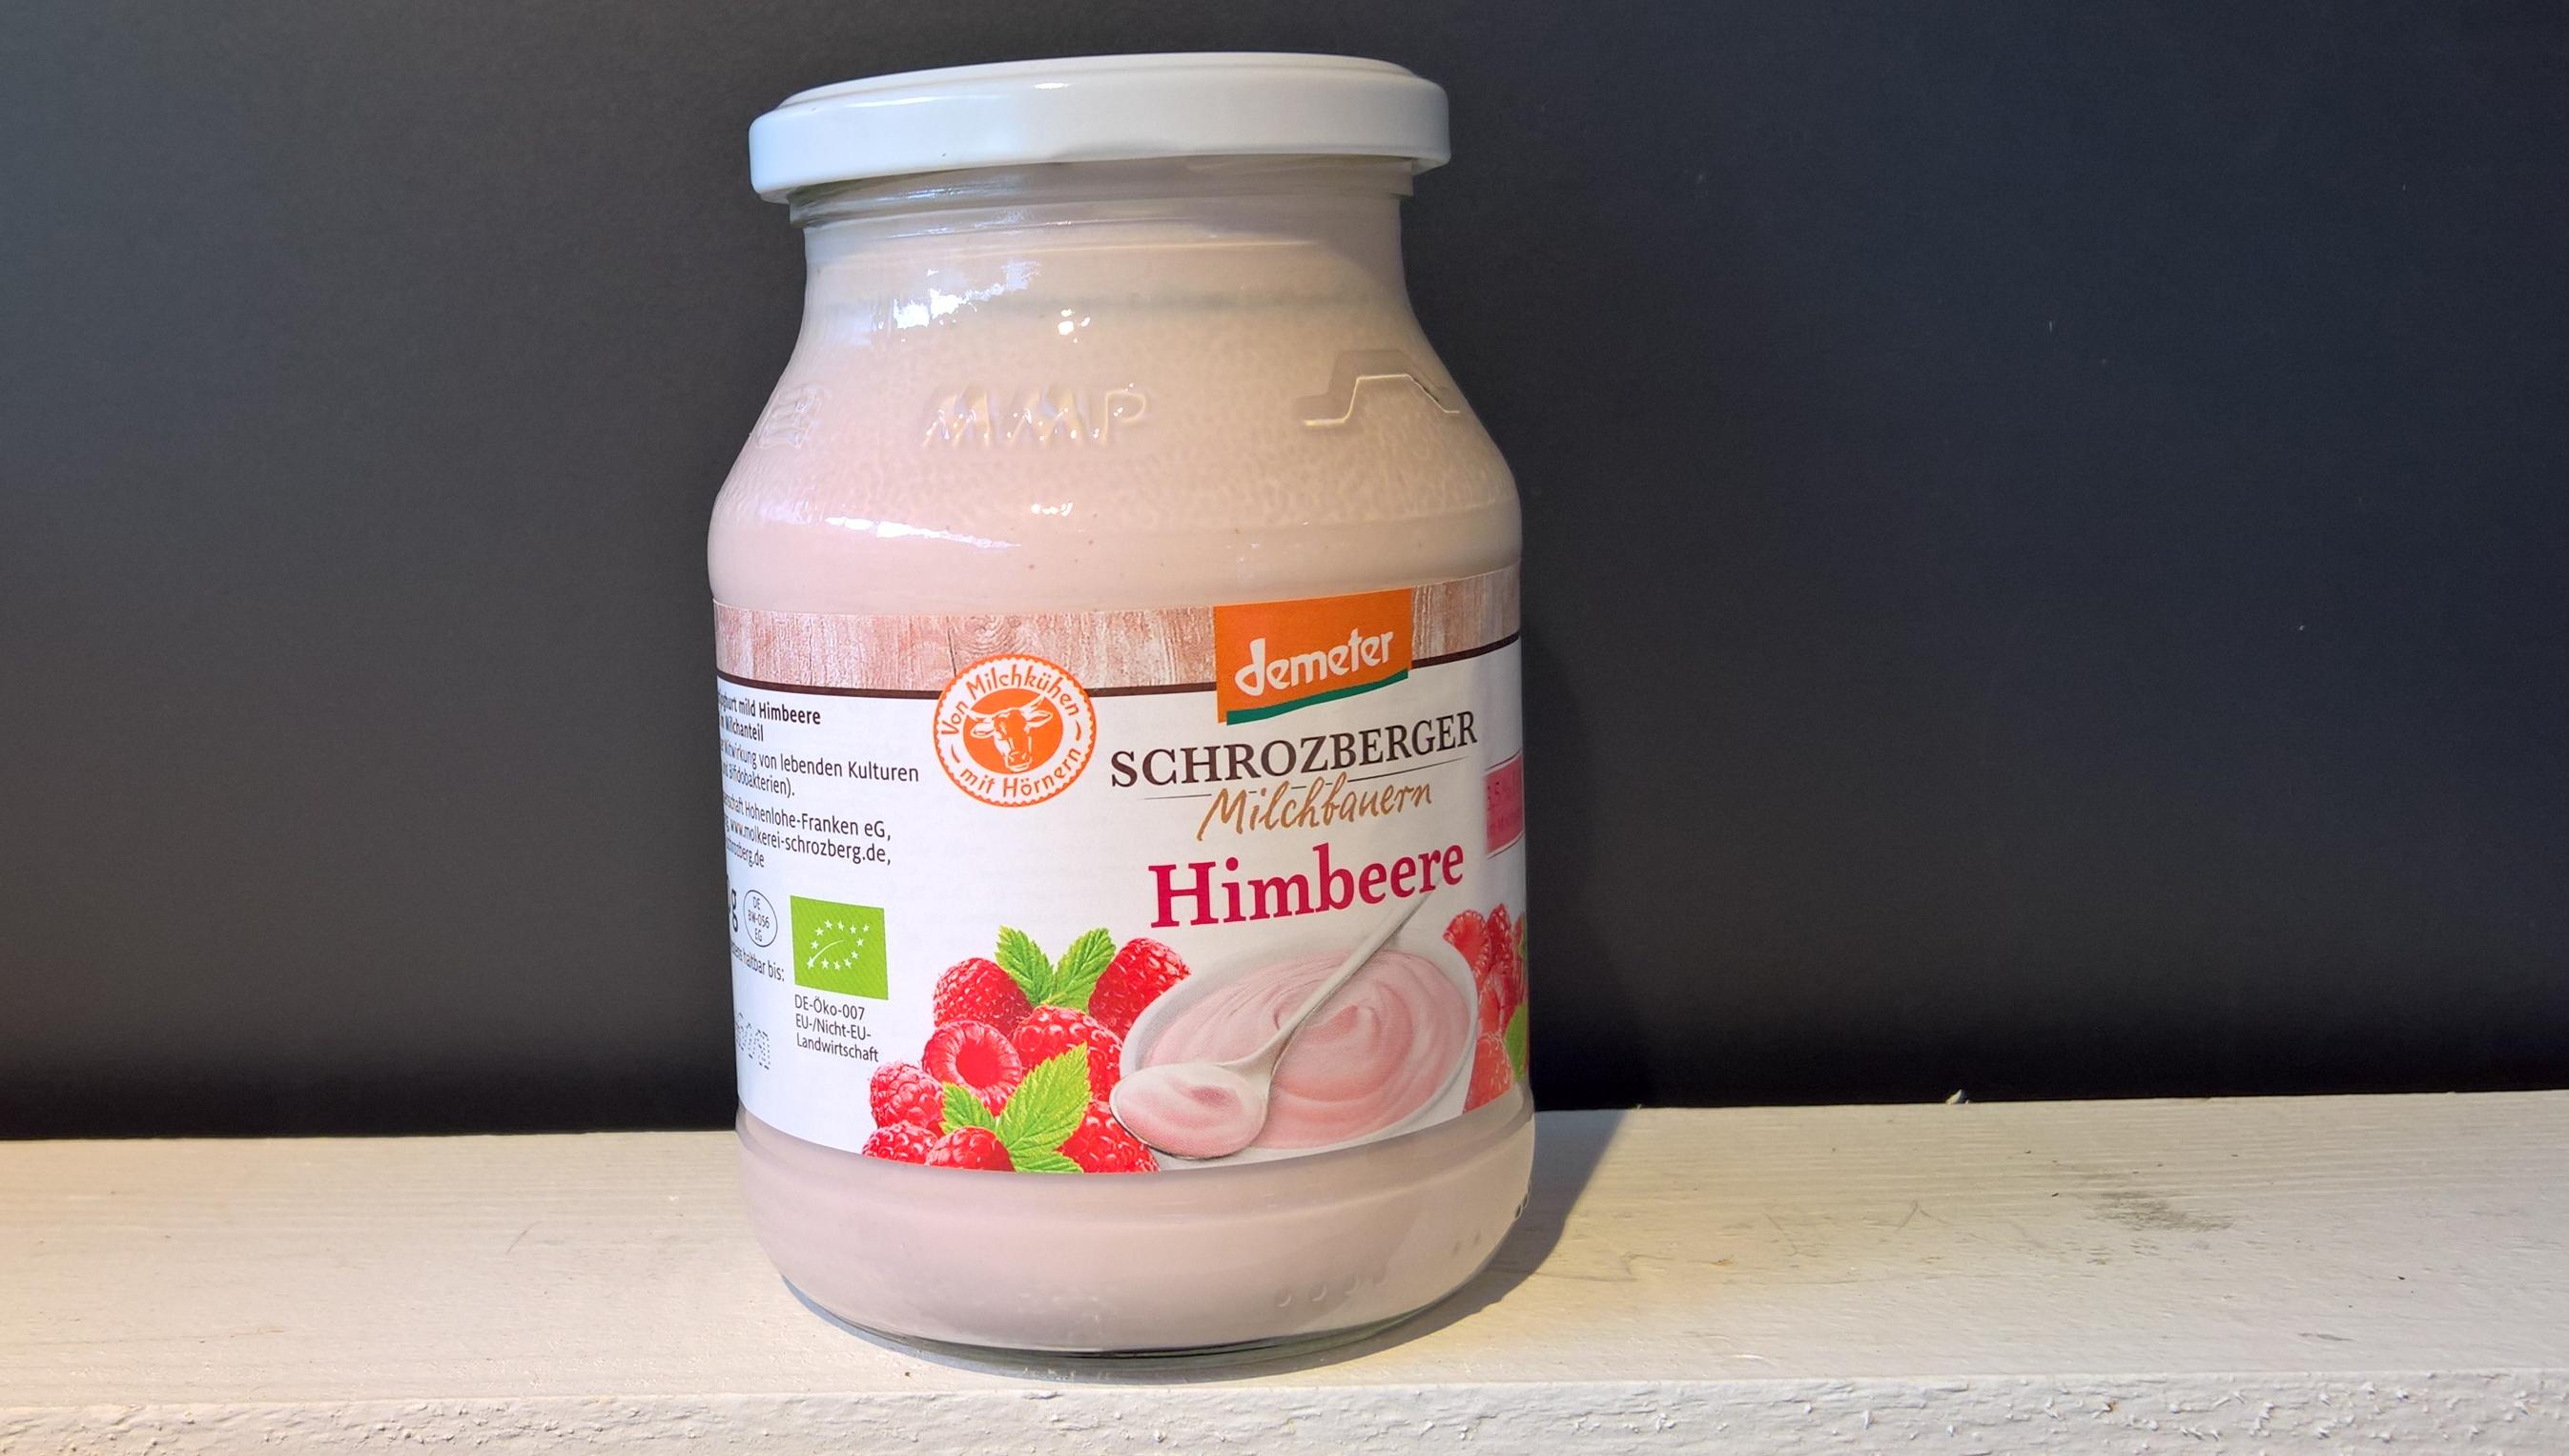 Himbeer Joghurt Schrozberger 500g